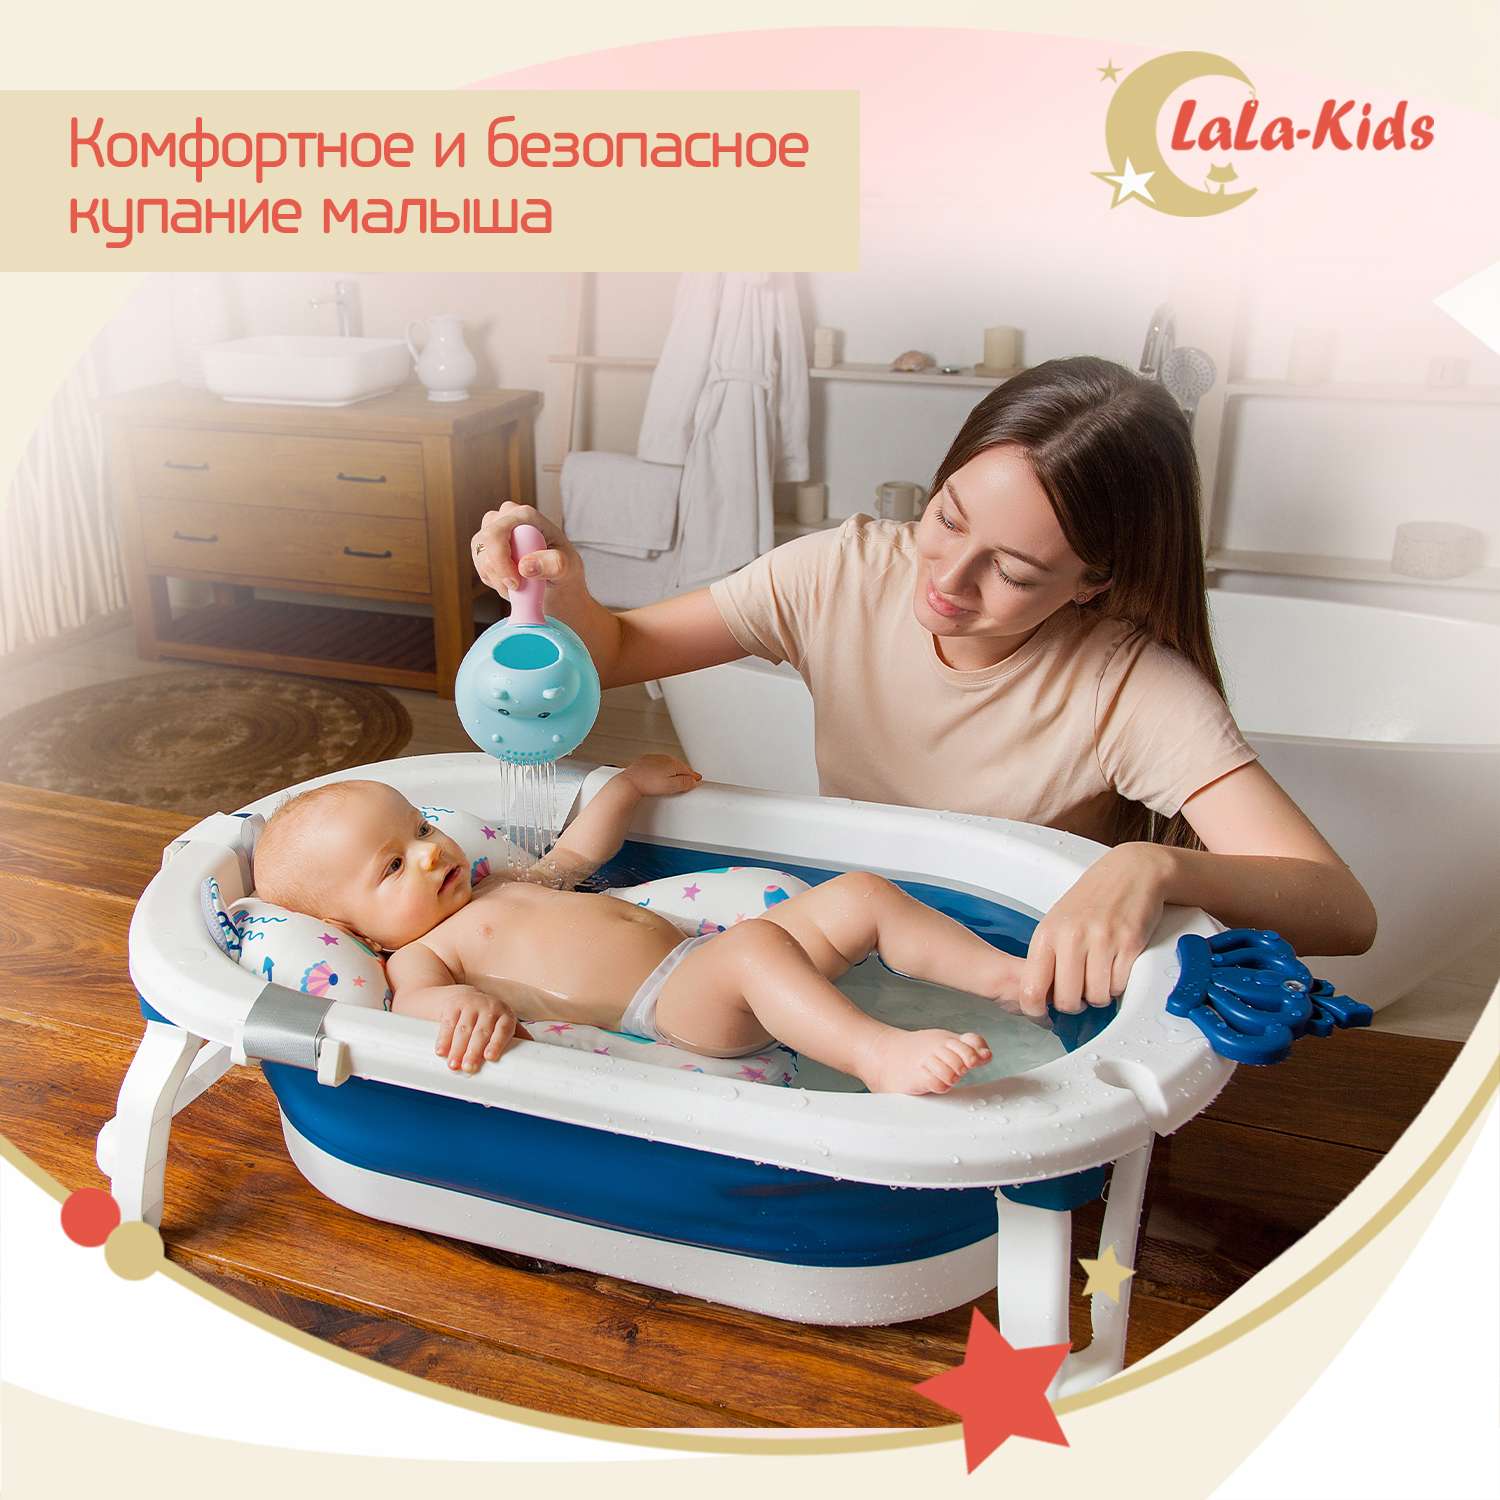 Детская ванночка LaLa-Kids складная с матрасиком для купания новорожденных - фото 3